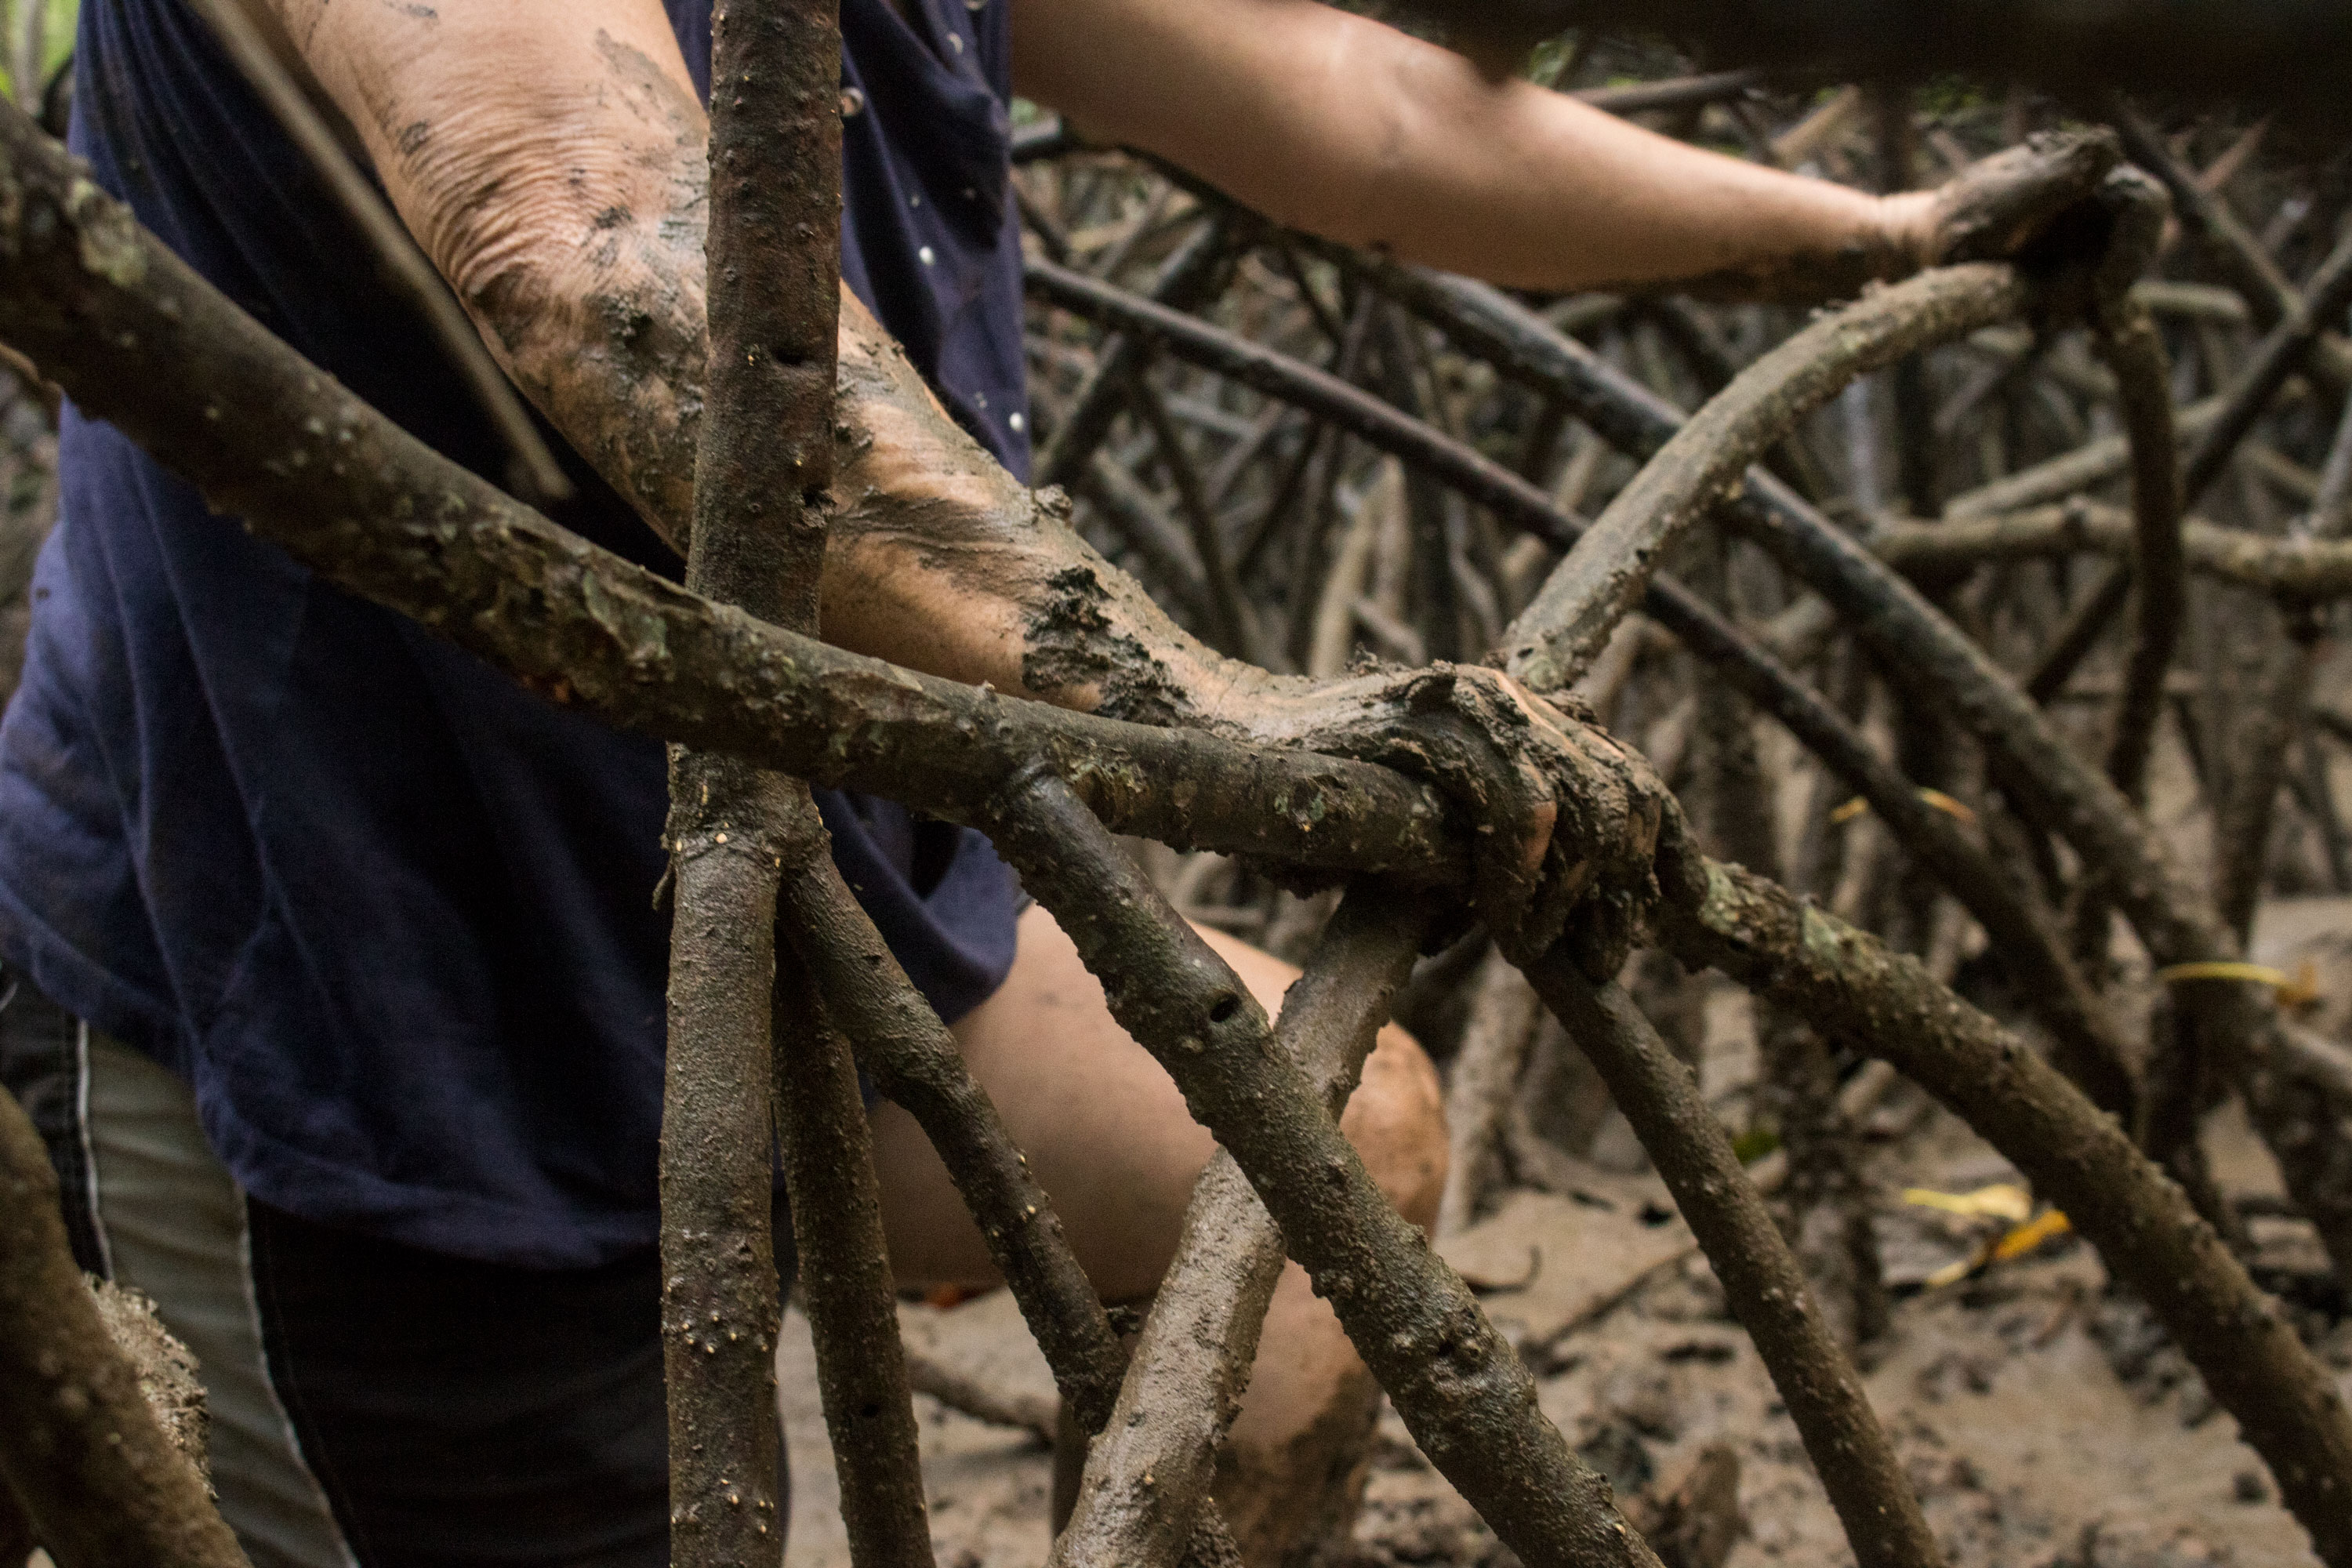 a comunidad de Purruja, dispersa en zonas aledañas al manglar, depende exclusivamente de la extracción de pianguas. Foto cortesía del proyecto.